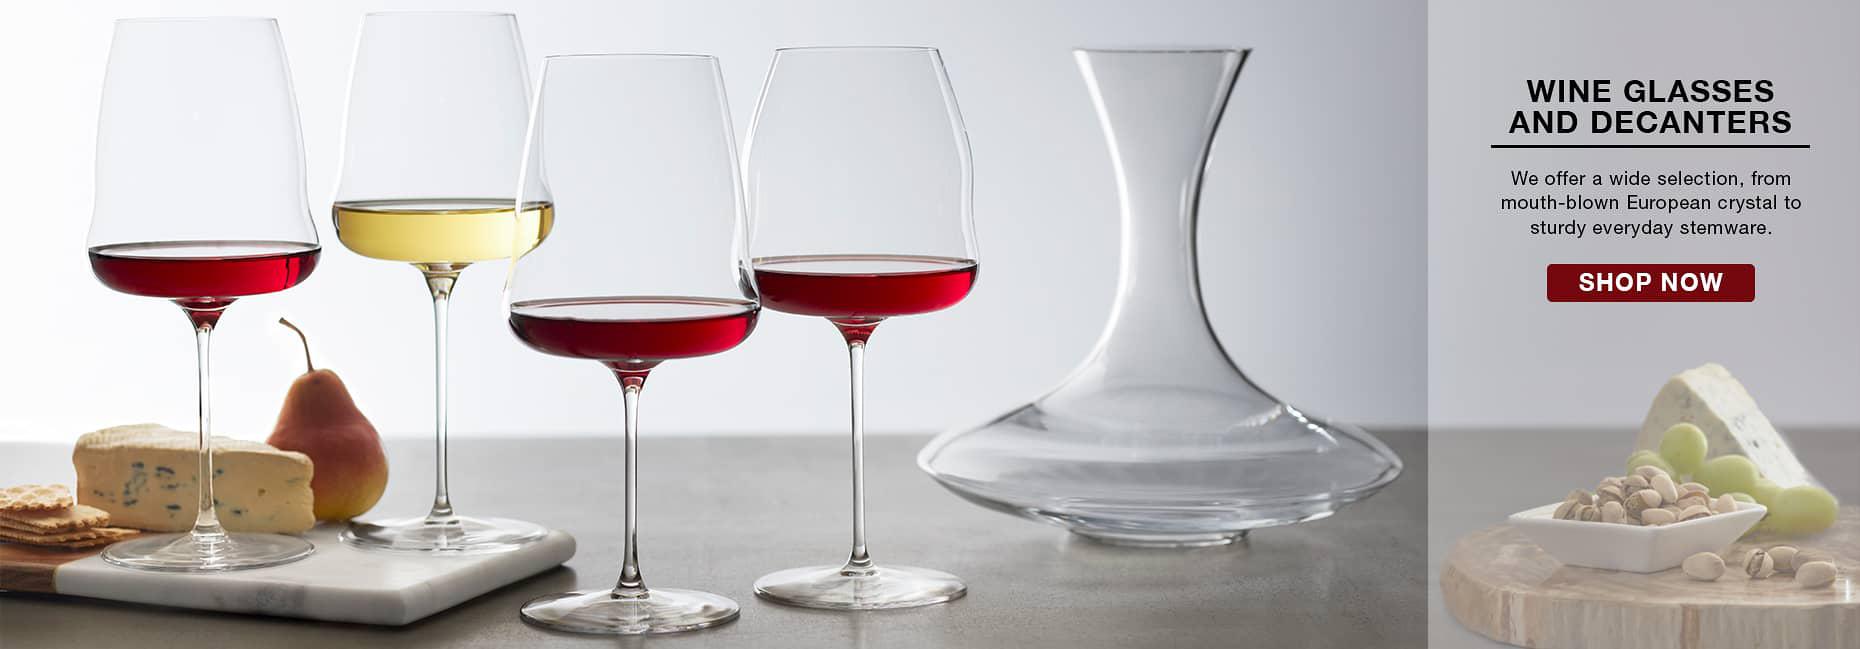 Wine Glasses, Stemware & Decanters - Riedel Glassware Collection